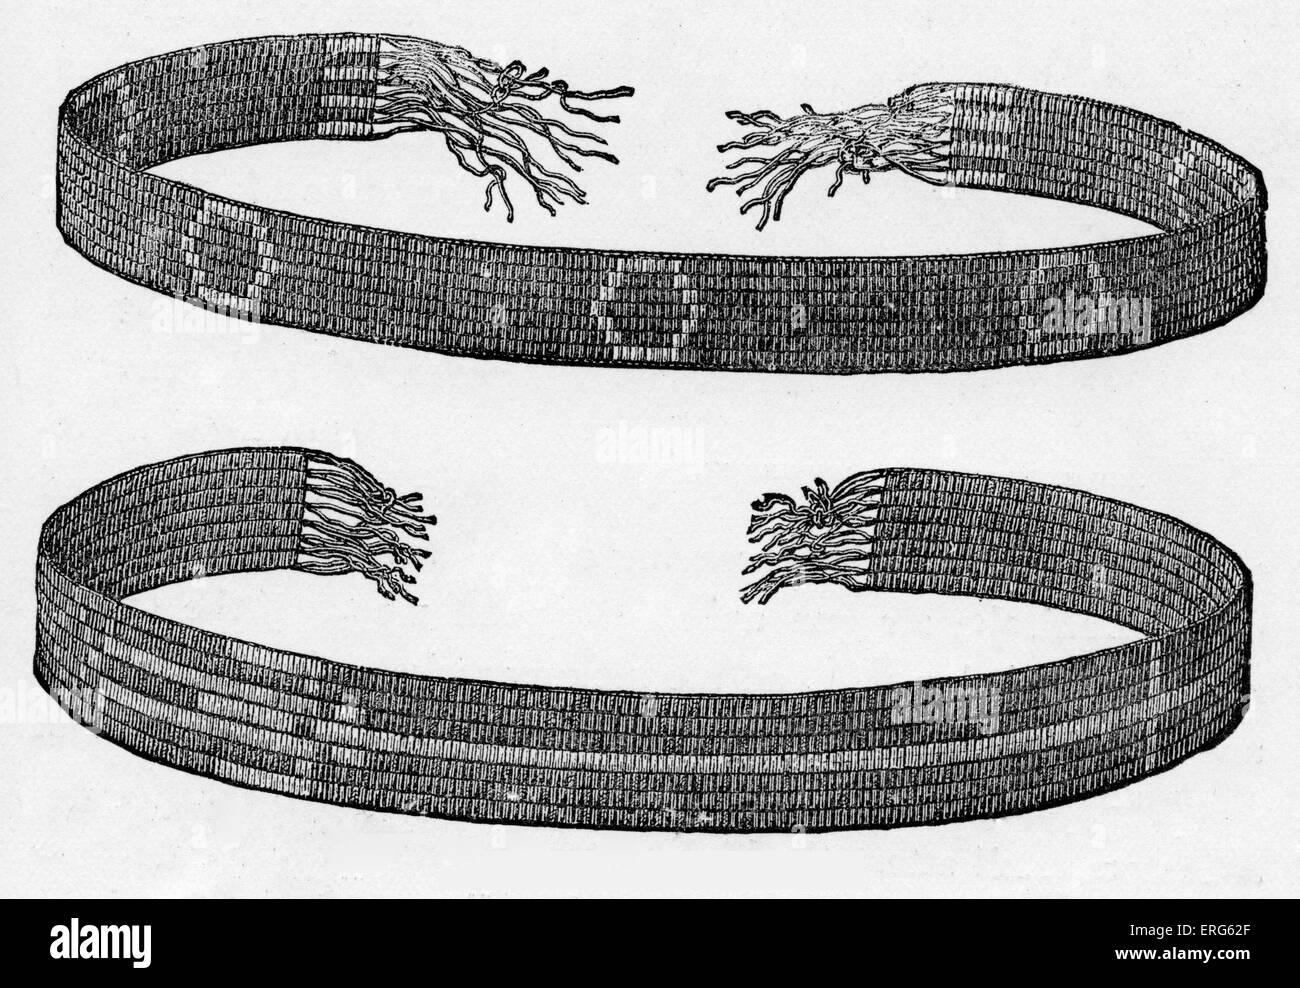 Les ceintures de wampum décorées, publié en 1887. Perles de wampum sont sacrés, à de nombreuses tribus américaines autochtones de l'Est. De wampums Banque D'Images